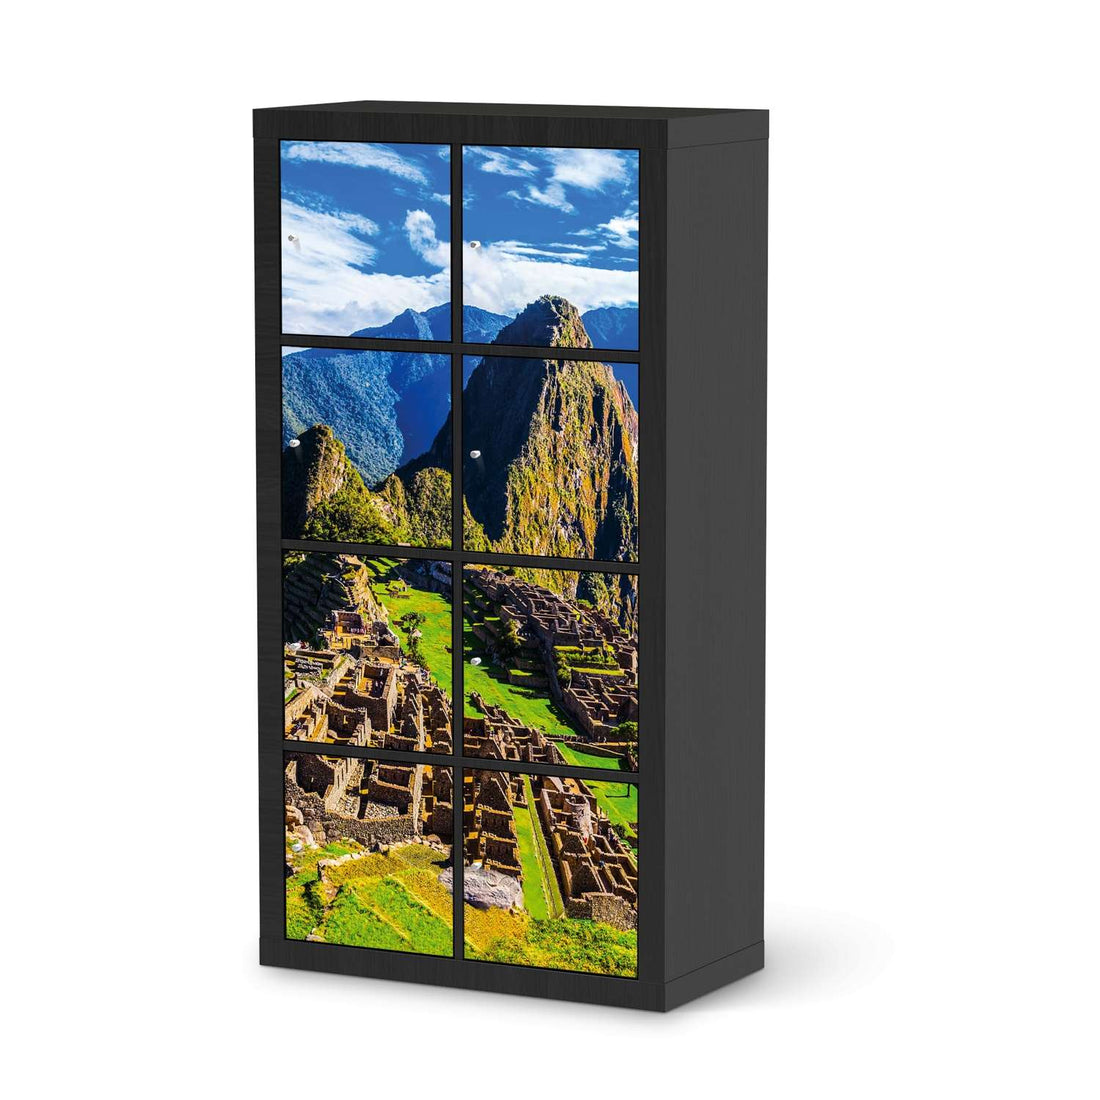 Folie für Möbel Machu Picchu - IKEA Kallax Regal 8 Türen - schwarz